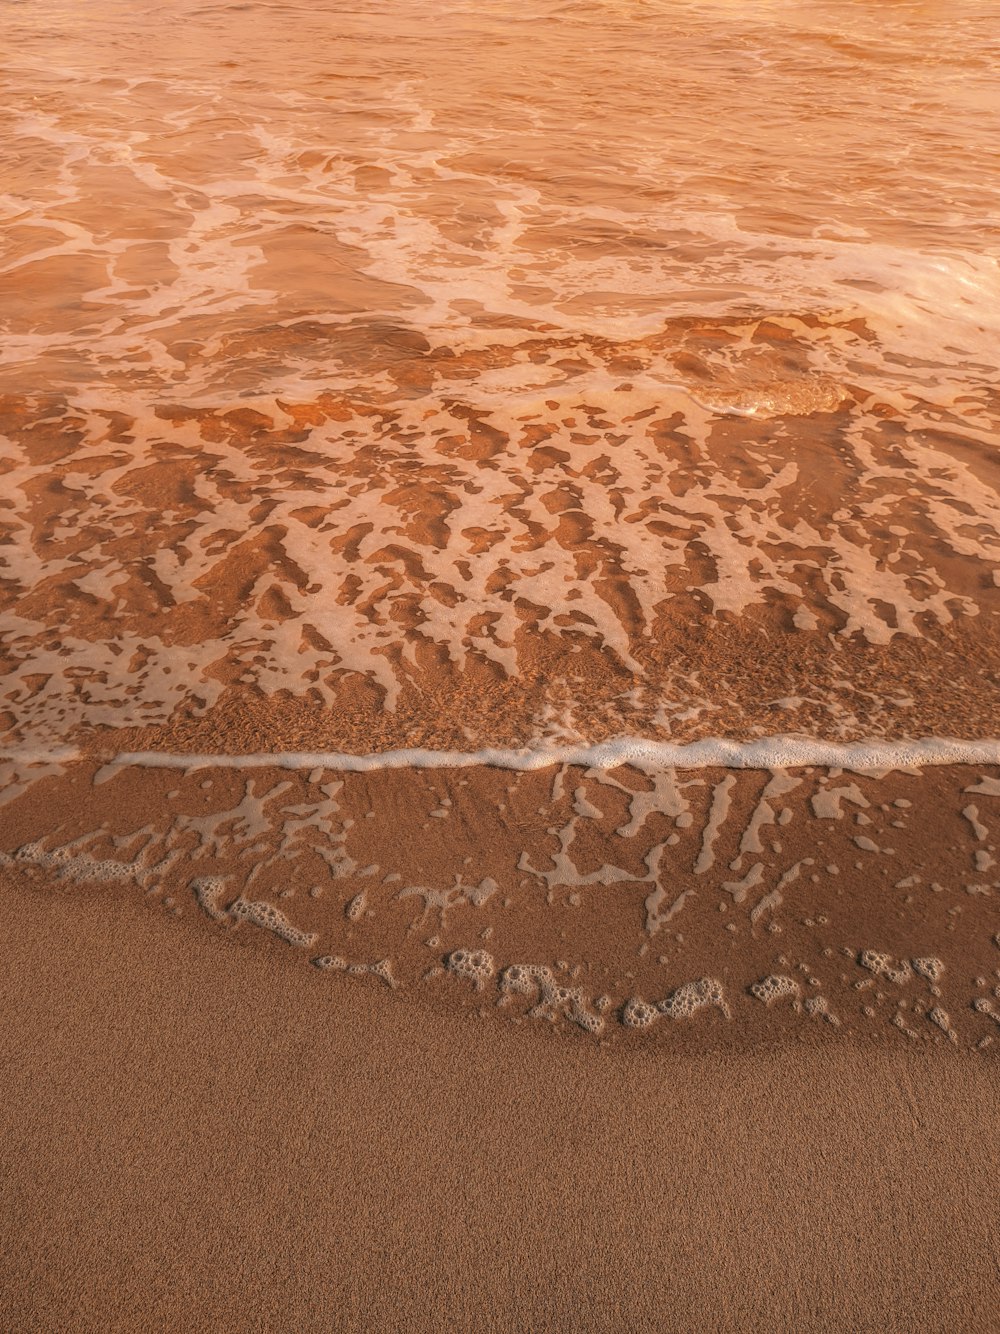 Playa de arena marrón durante el día